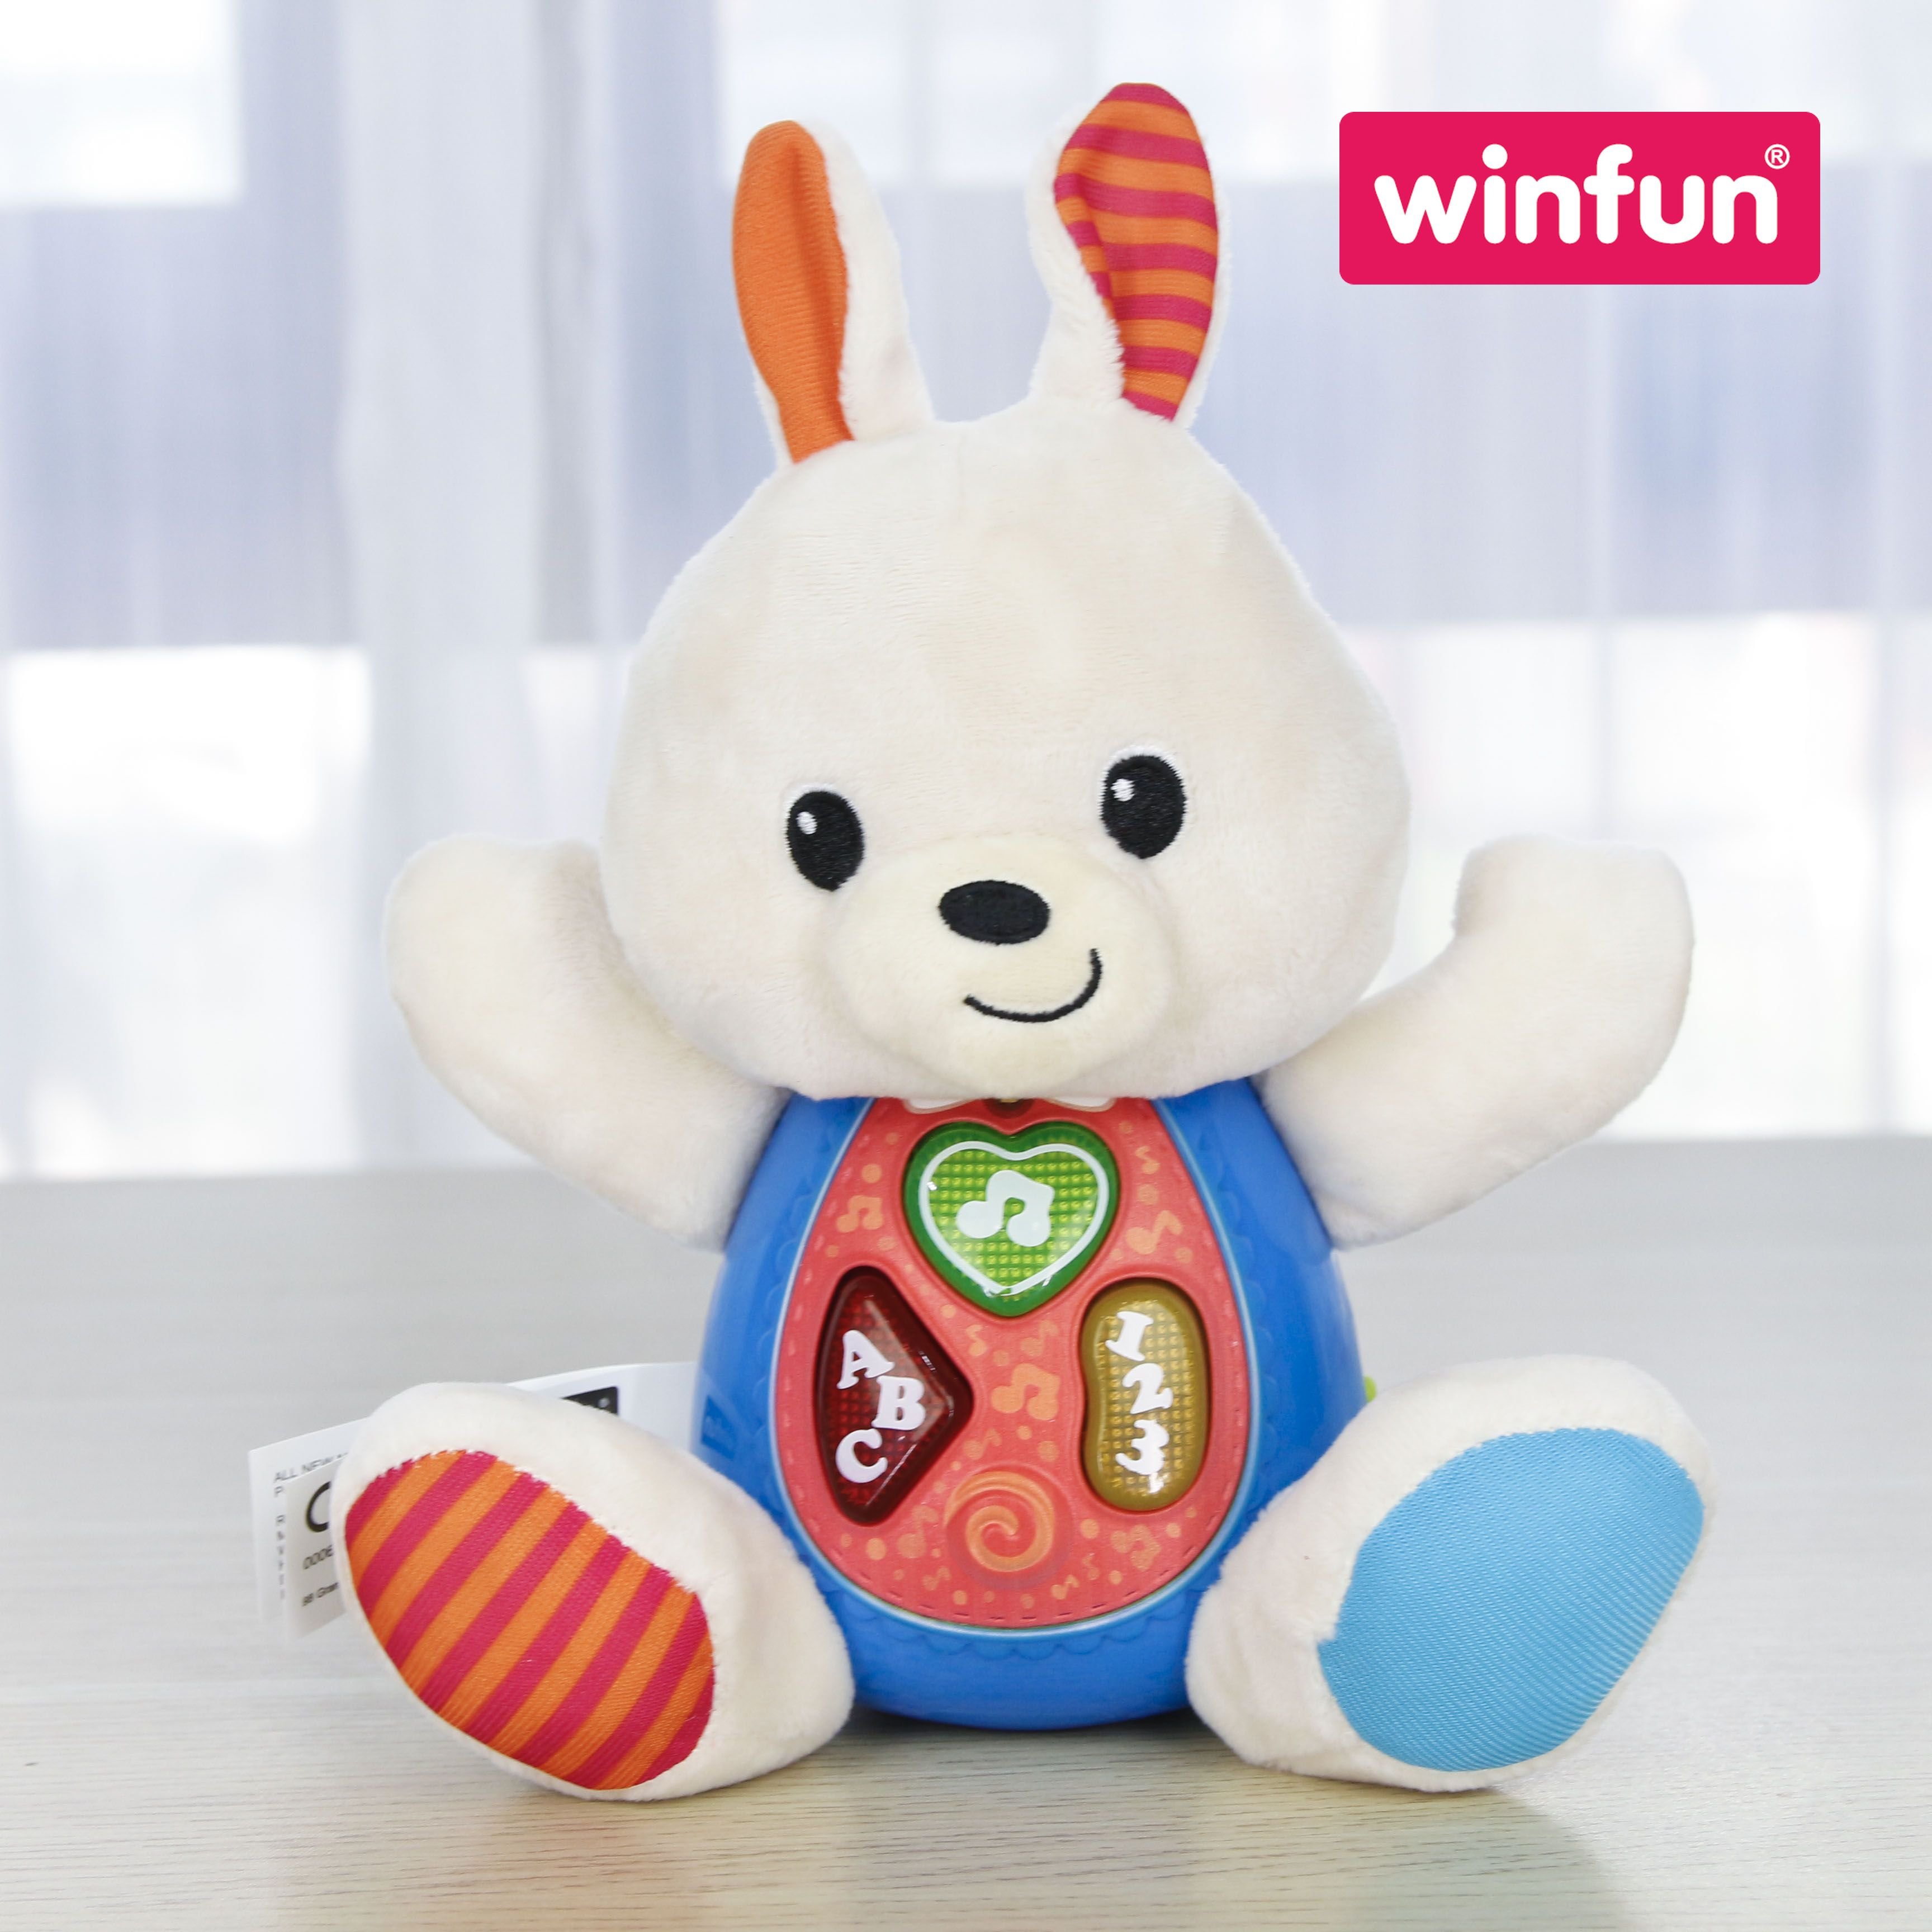 Đồ chơi cho bé hình chú thỏ LiLi phát nhạc vui nhộn - biết đọc chữ tiếng anh giáo dục sớm cho trẻ 0-36 tháng Winfun 0687-01